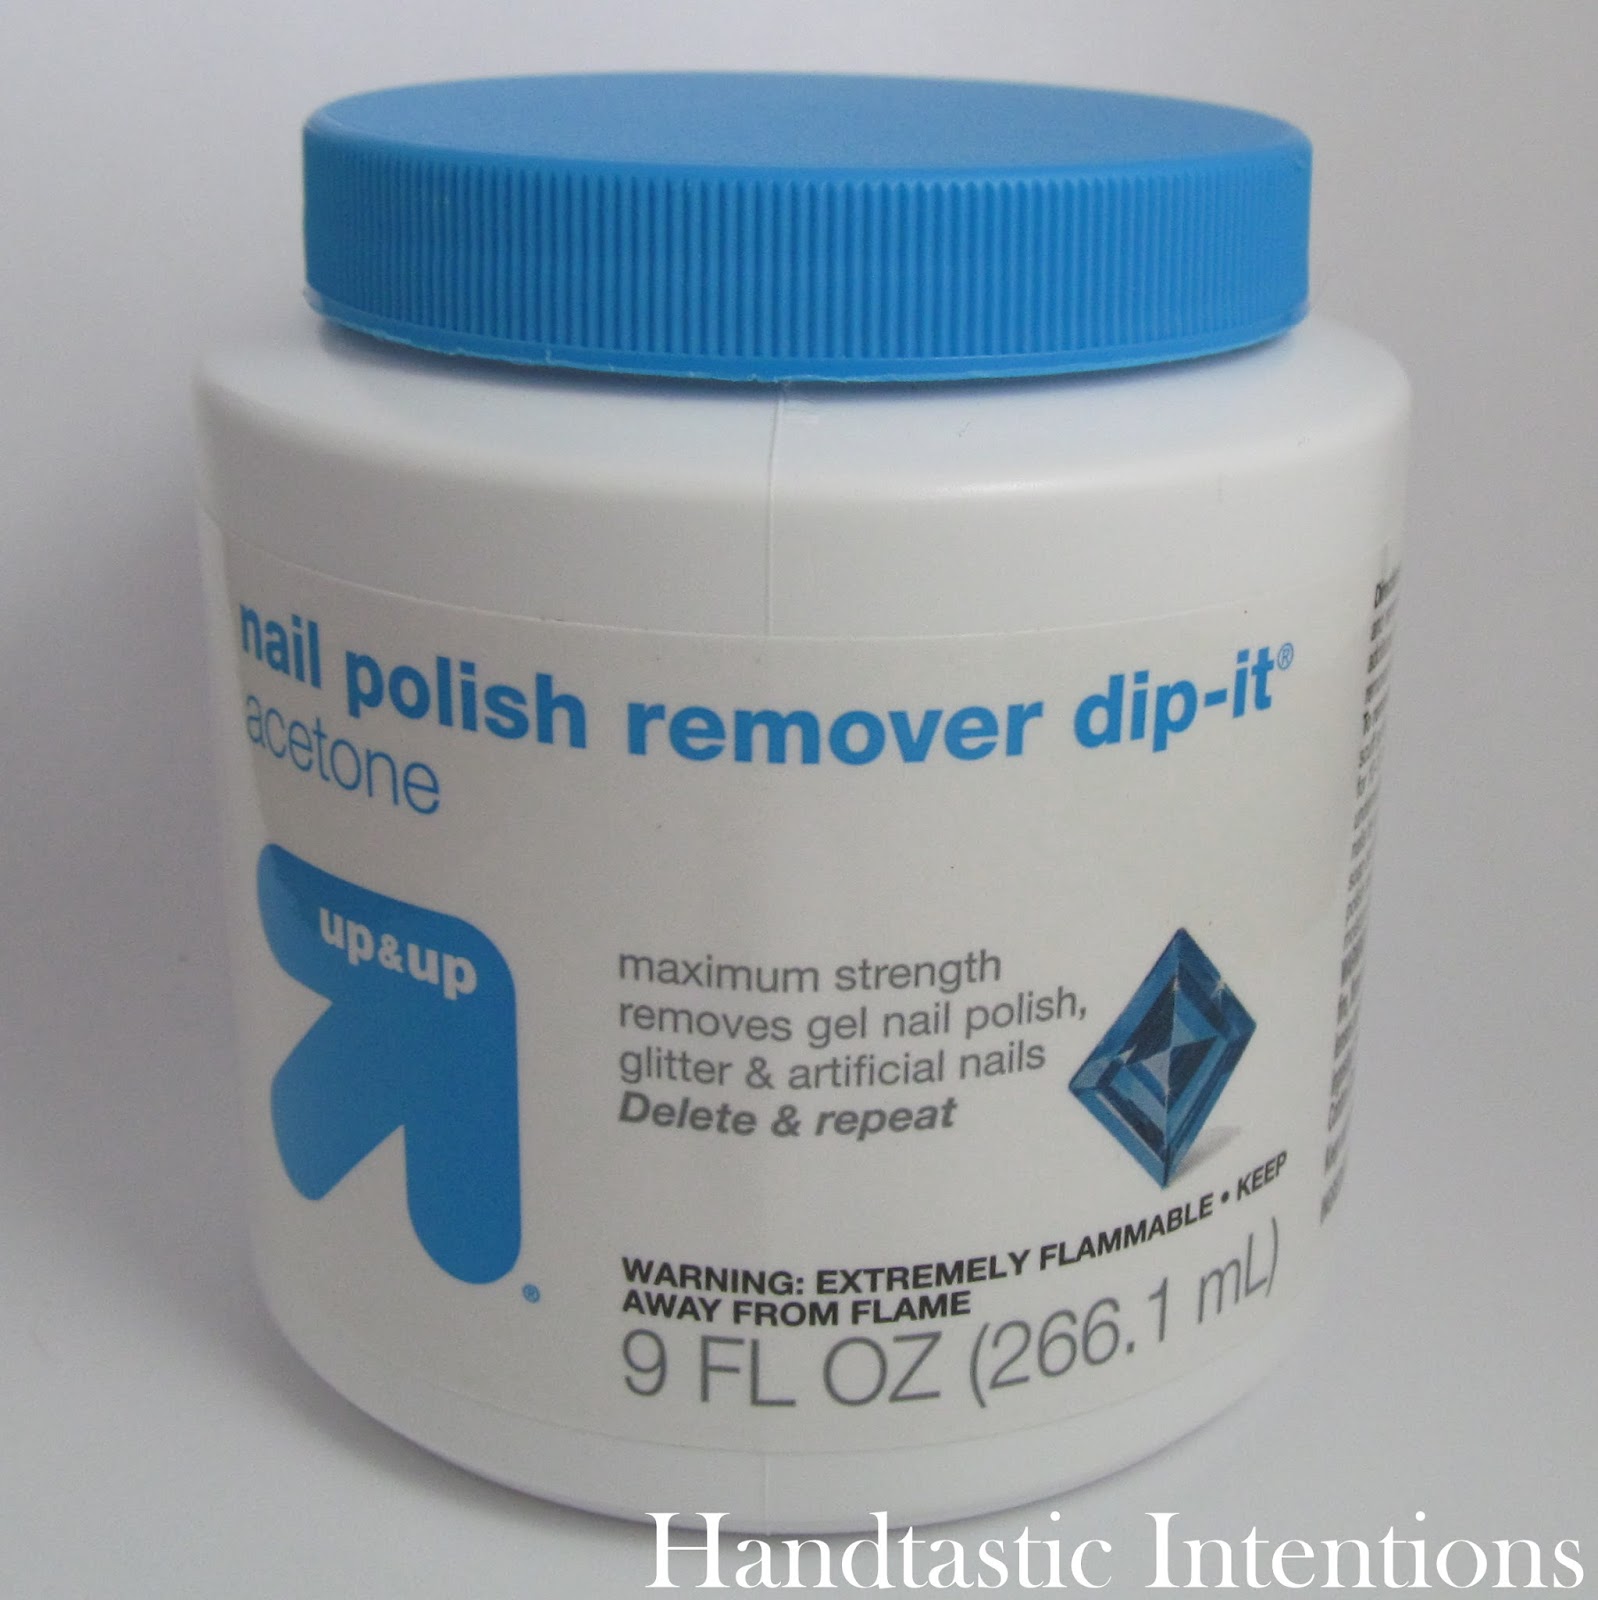 Up-and-Up-Nail-Polish-Remover-Dip-It